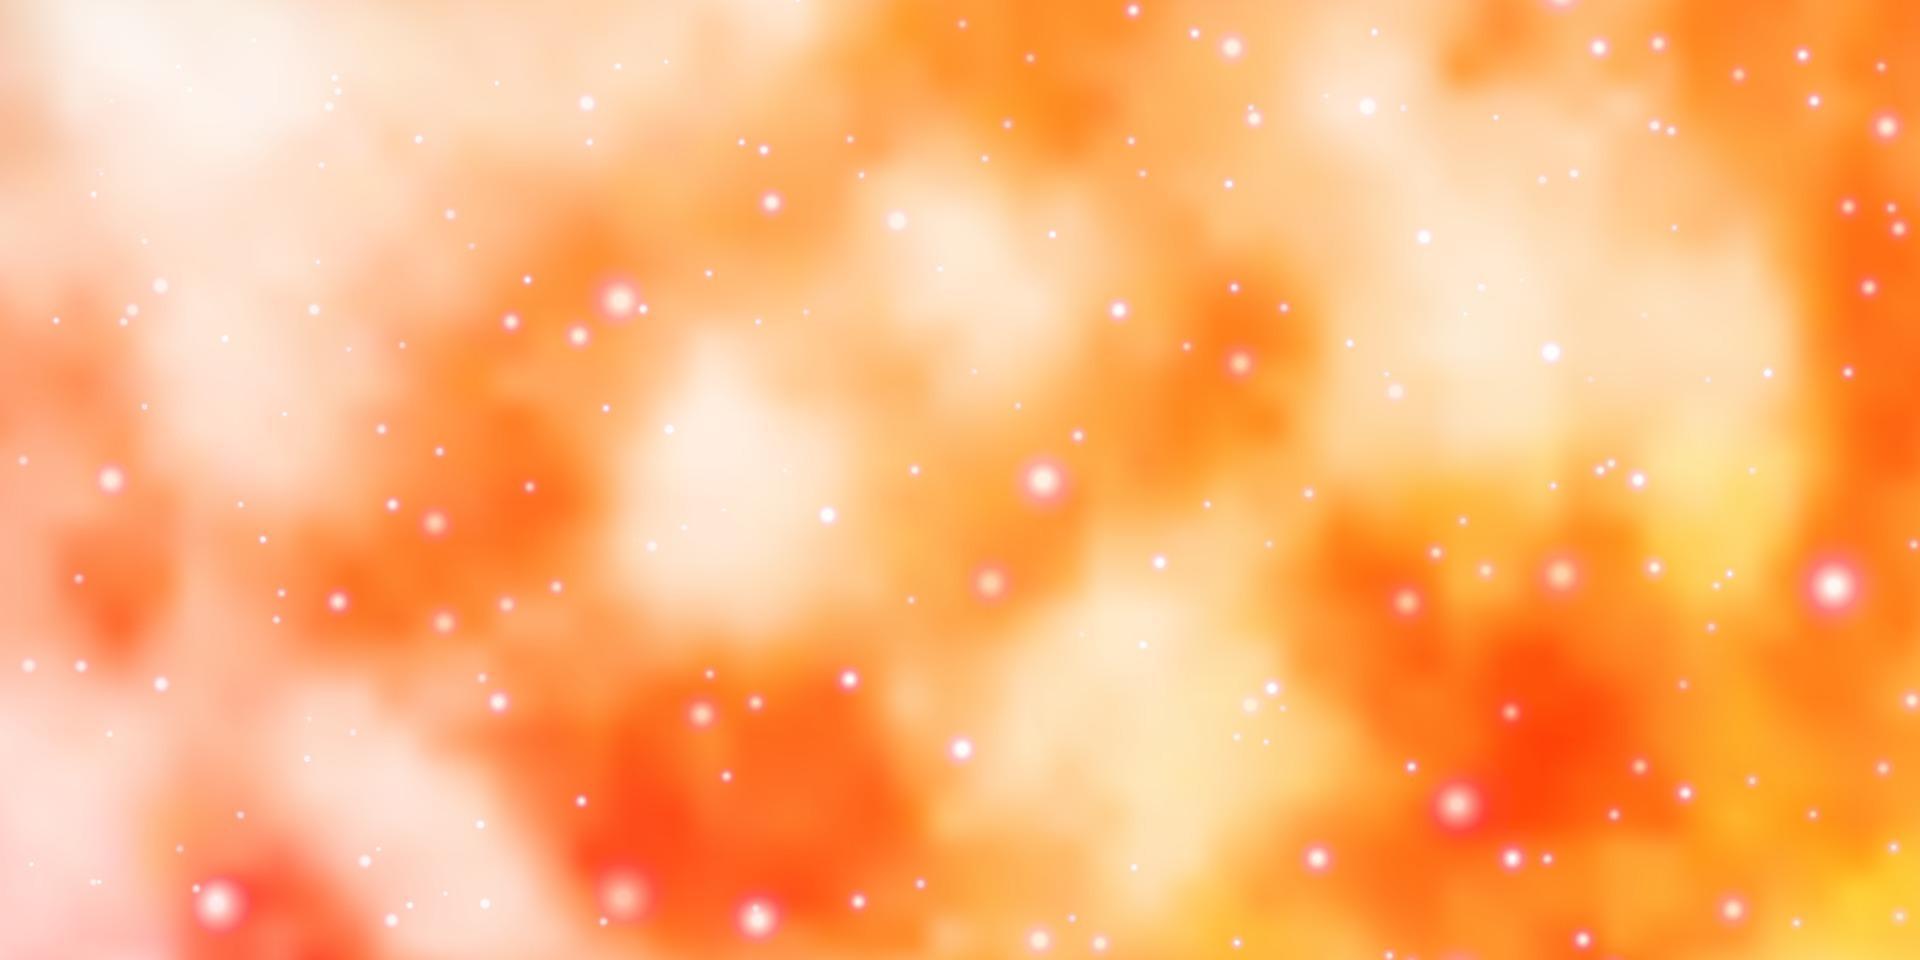 ljus orange vektor bakgrund med små och stora stjärnor.